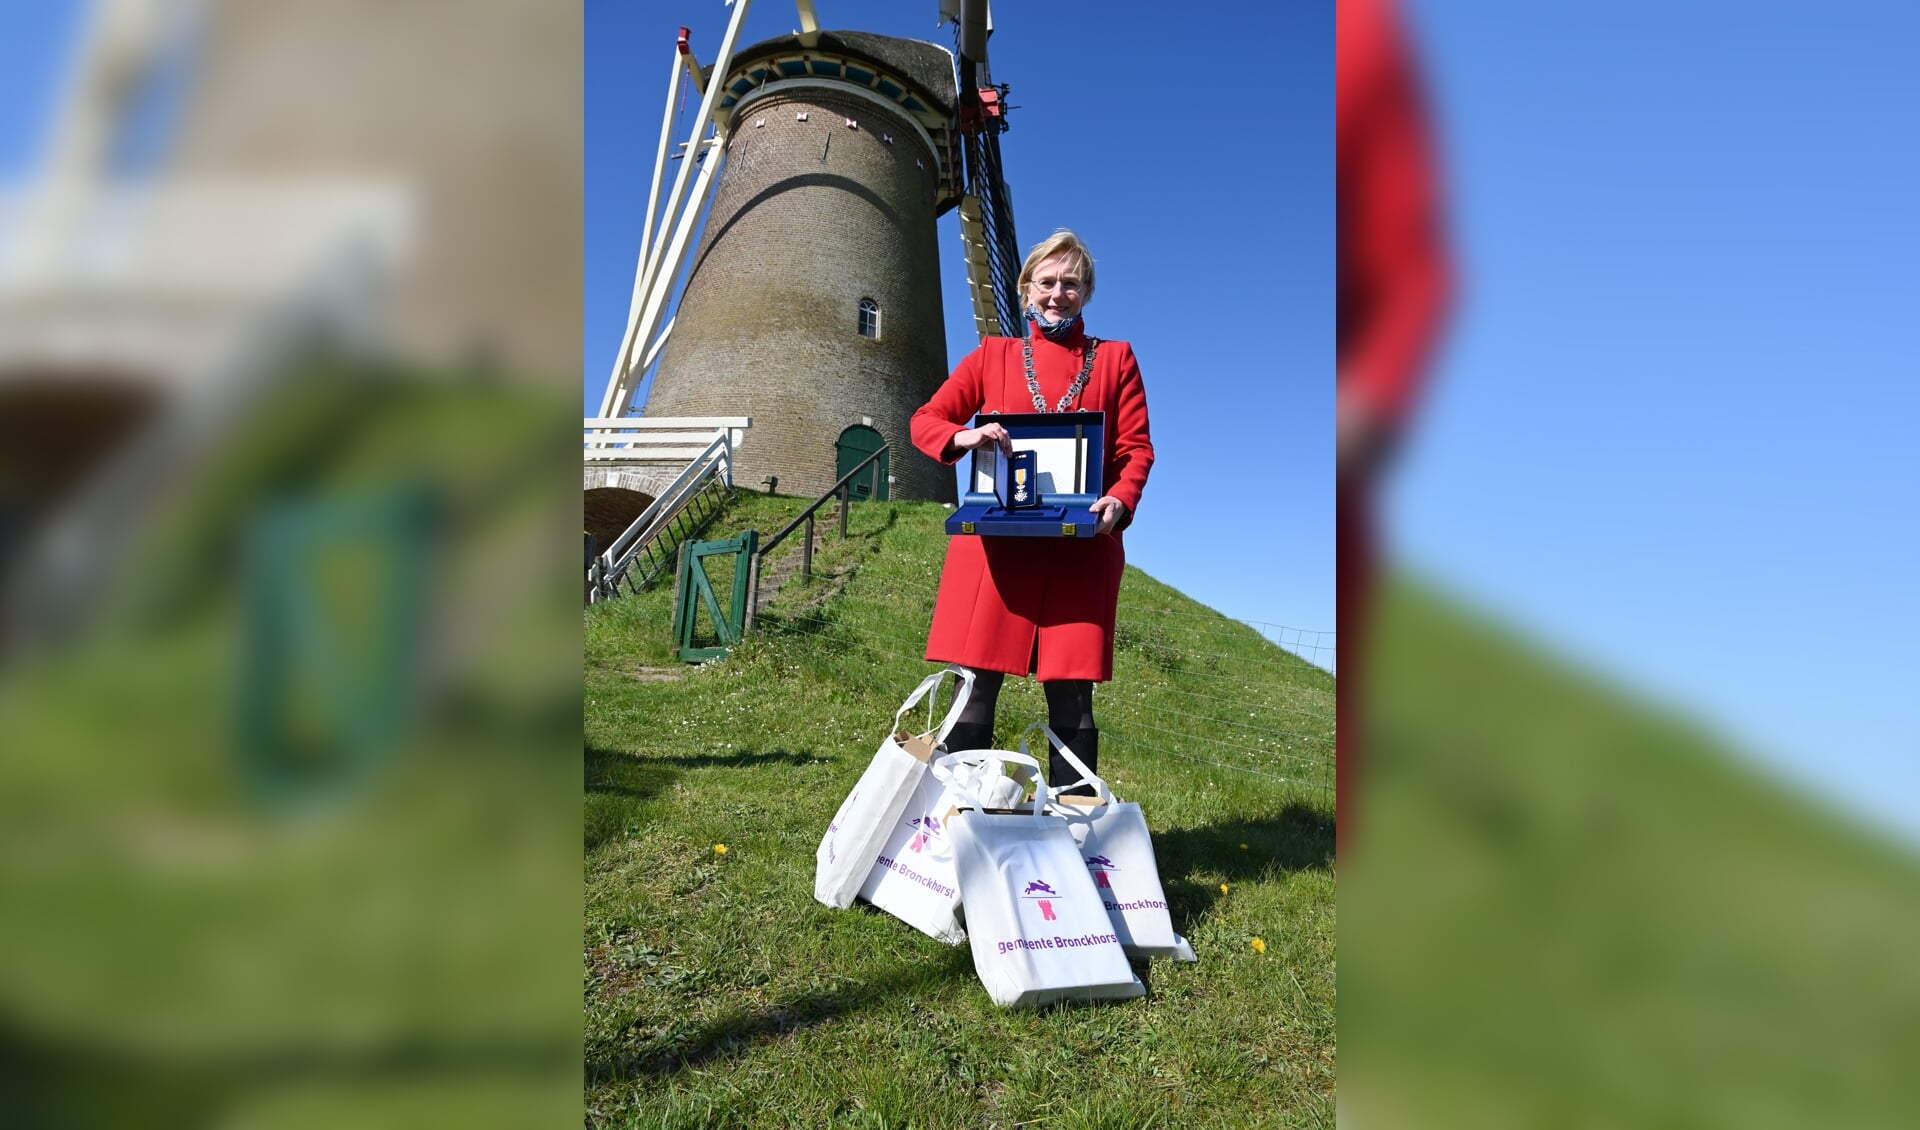 Burgemeester Marianne Besselink gaat op lintjesdag 'de boer op' met lintjes om elf vrijwilligers koninklijk te onderscheiden. Foto: Gemeente Bronckhorst 